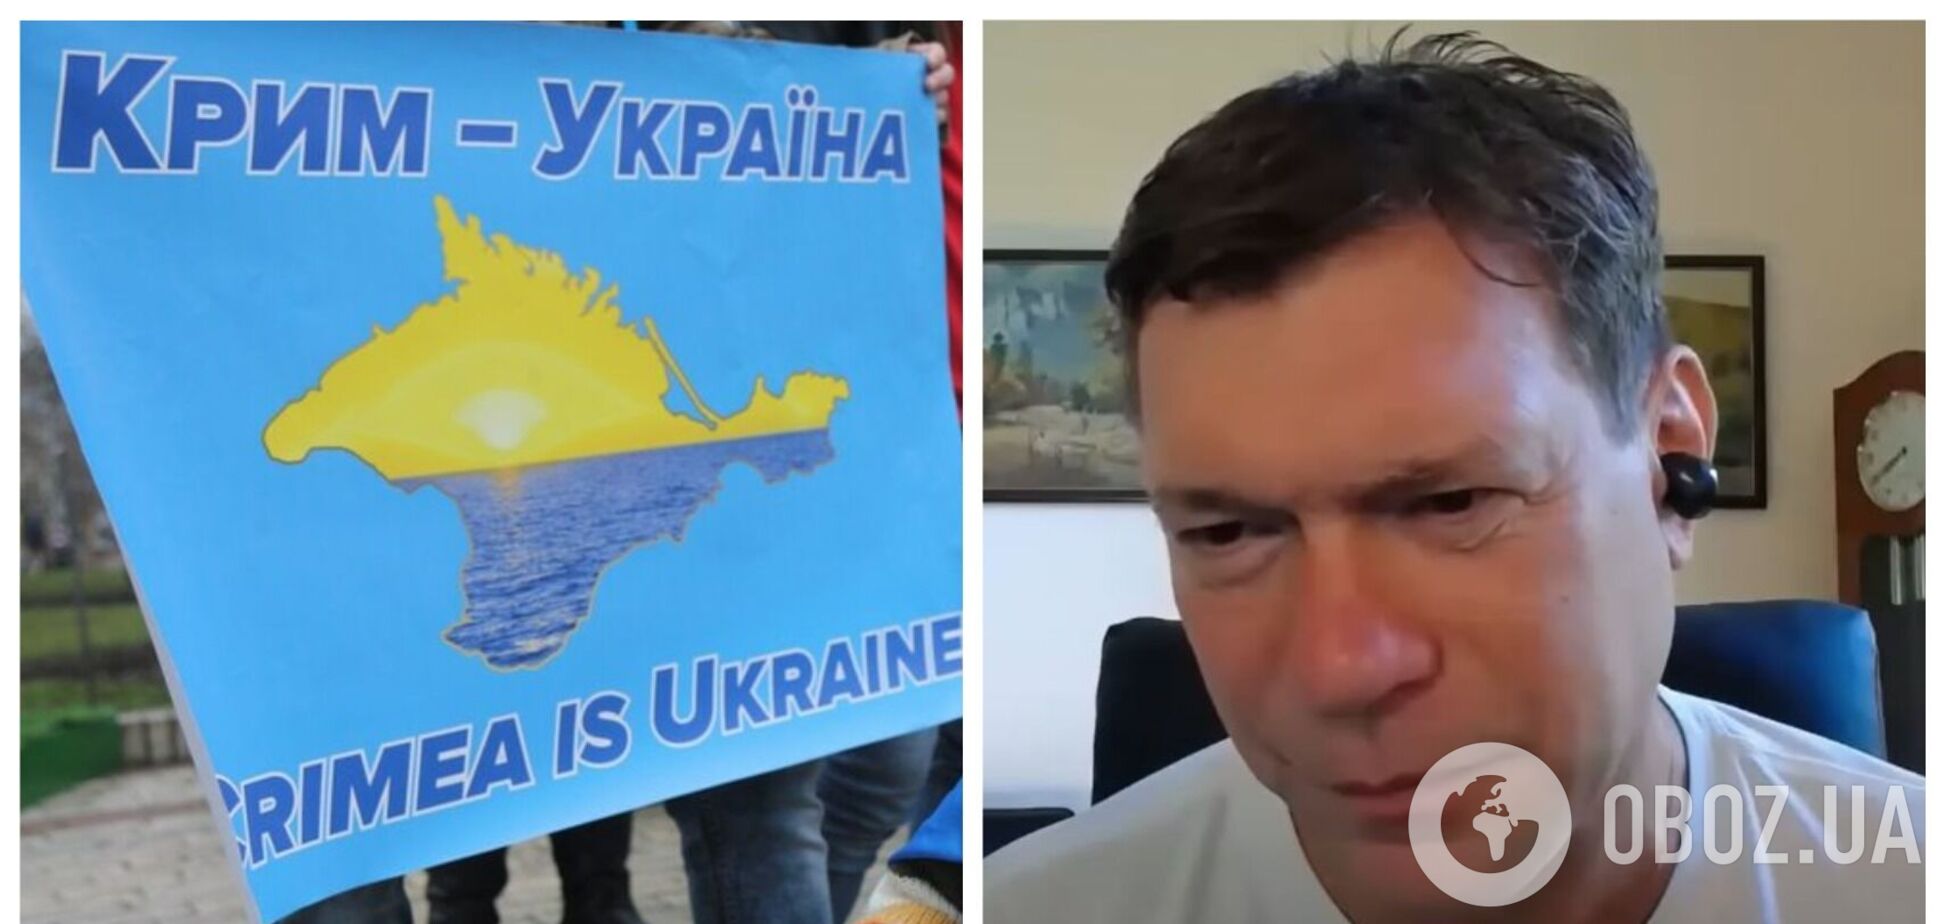 'На мене кидалися':  Царьов поскаржився, що в Криму на нього напали 'озвірілі' українські патріоти. Відео  